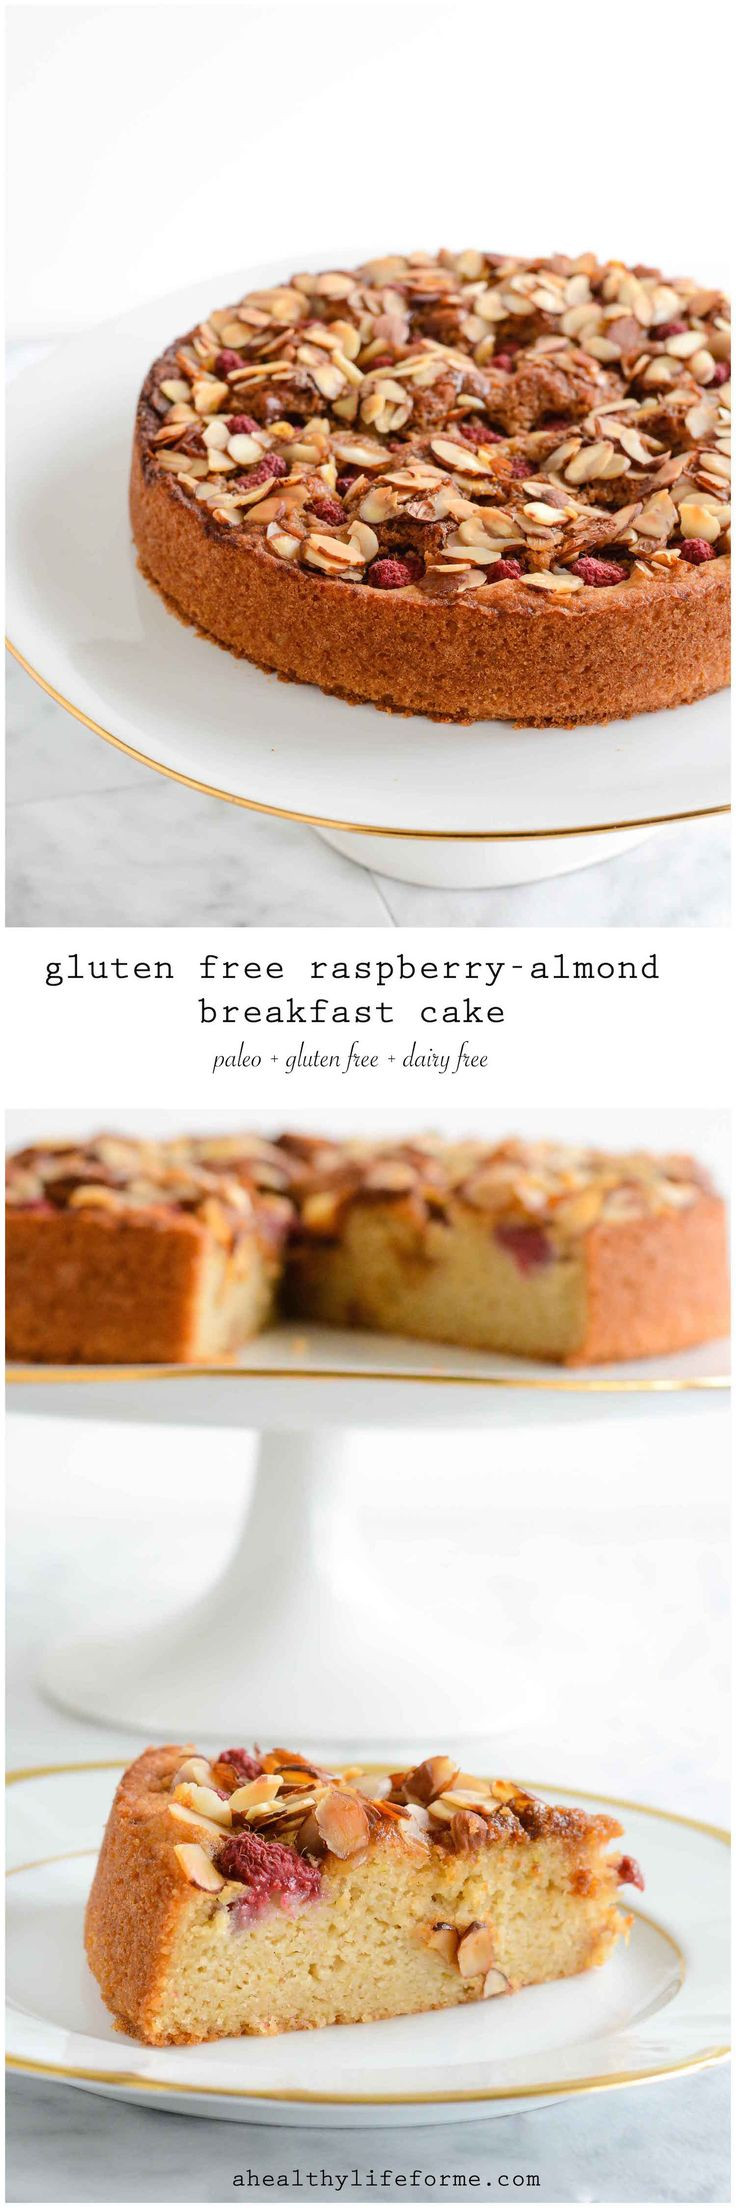 Gluten Free Dairy Free Breakfast Recipes
 345 best Gluten Free Breakfast Recipes images on Pinterest